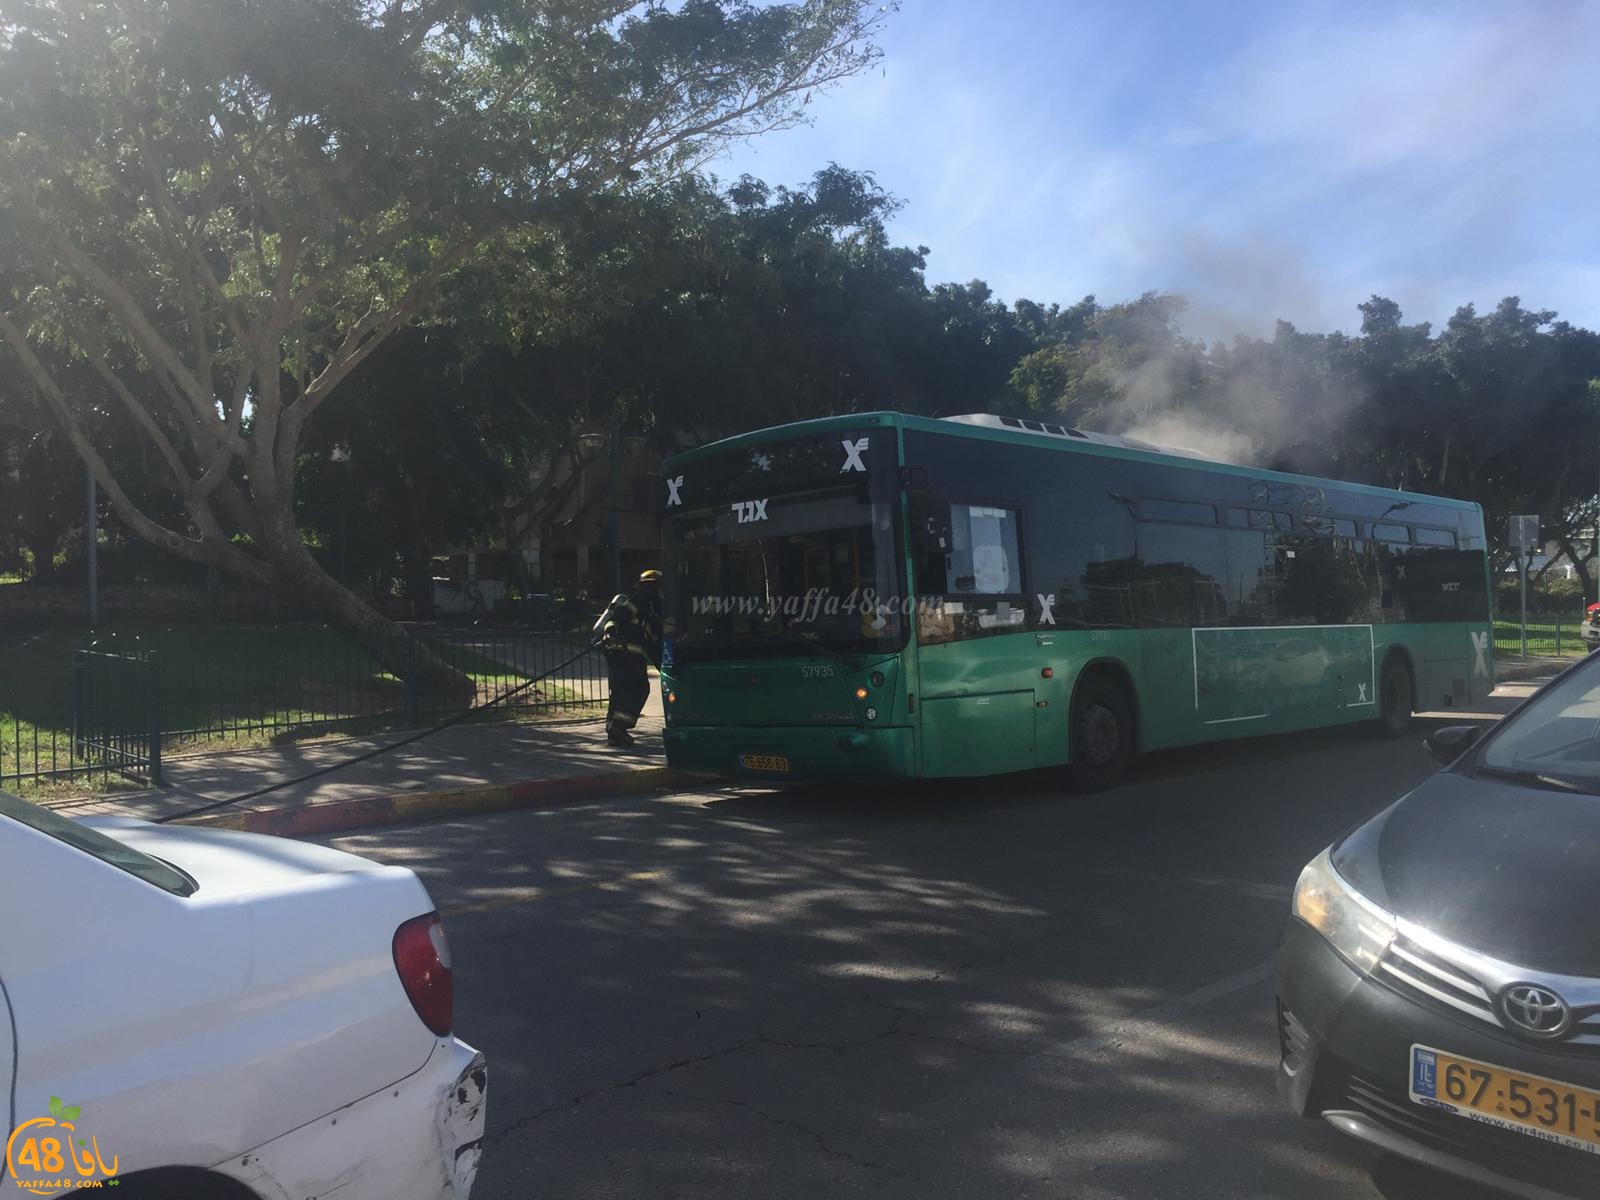   بالصور: إندلاع حريق بحافلة قرب دوار فولفسون بمدينة يافا واخلاء الركاب